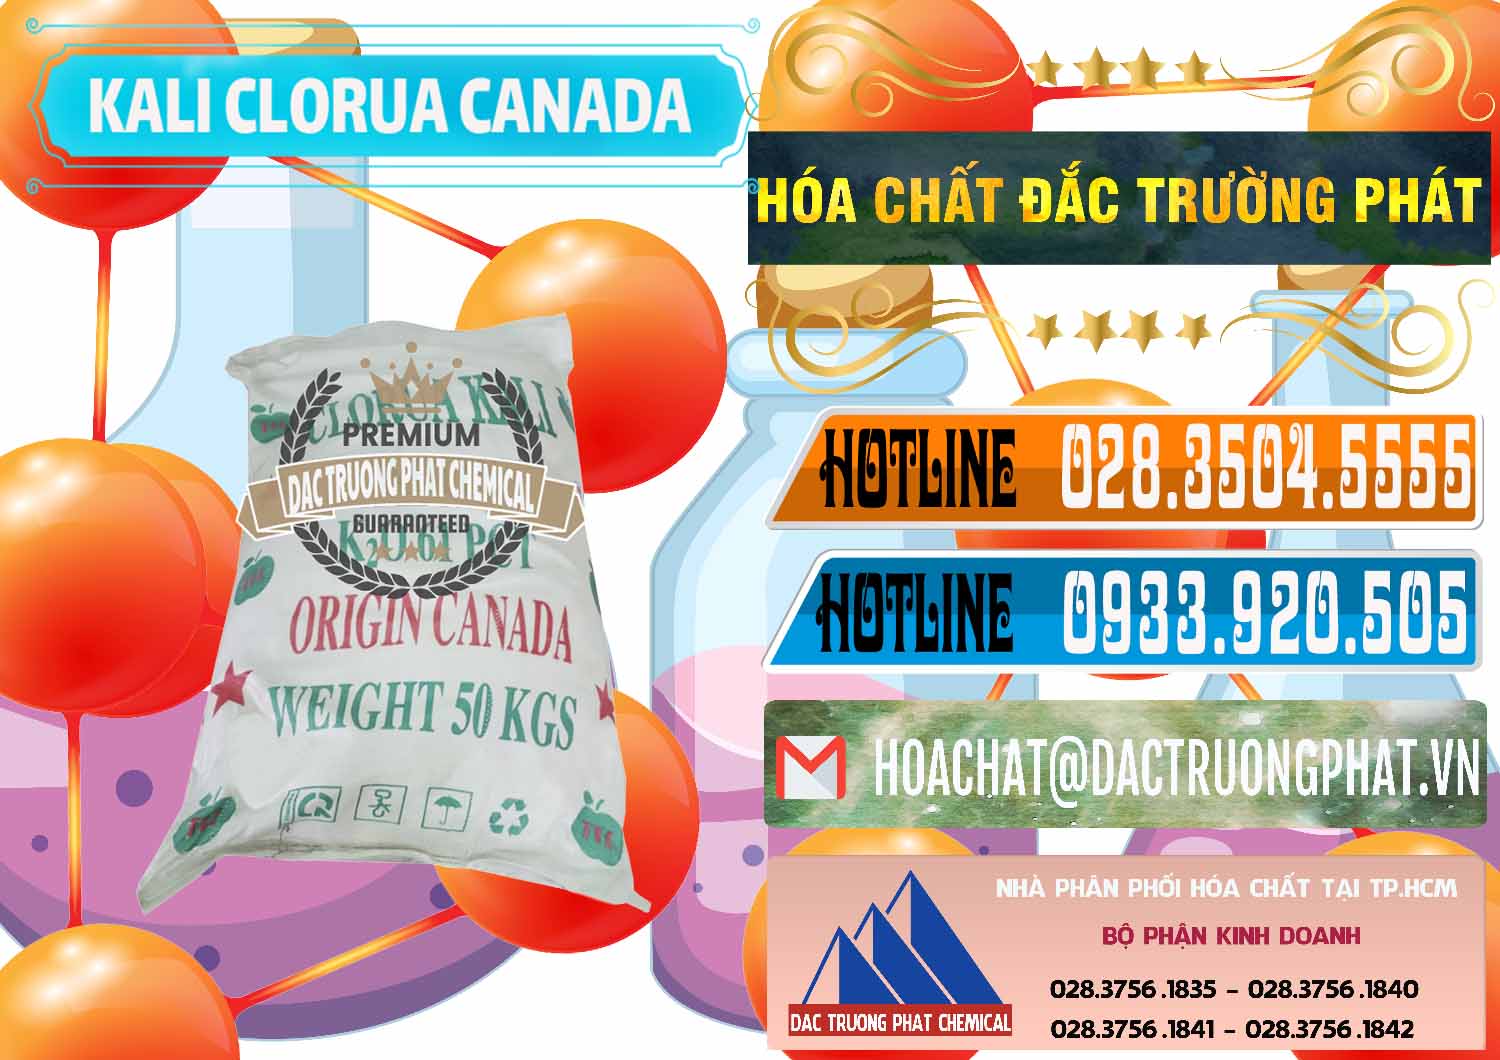 Cty chuyên bán _ cung ứng KCL – Kali Clorua Trắng Canada - 0437 - Chuyên kinh doanh _ phân phối hóa chất tại TP.HCM - stmp.net